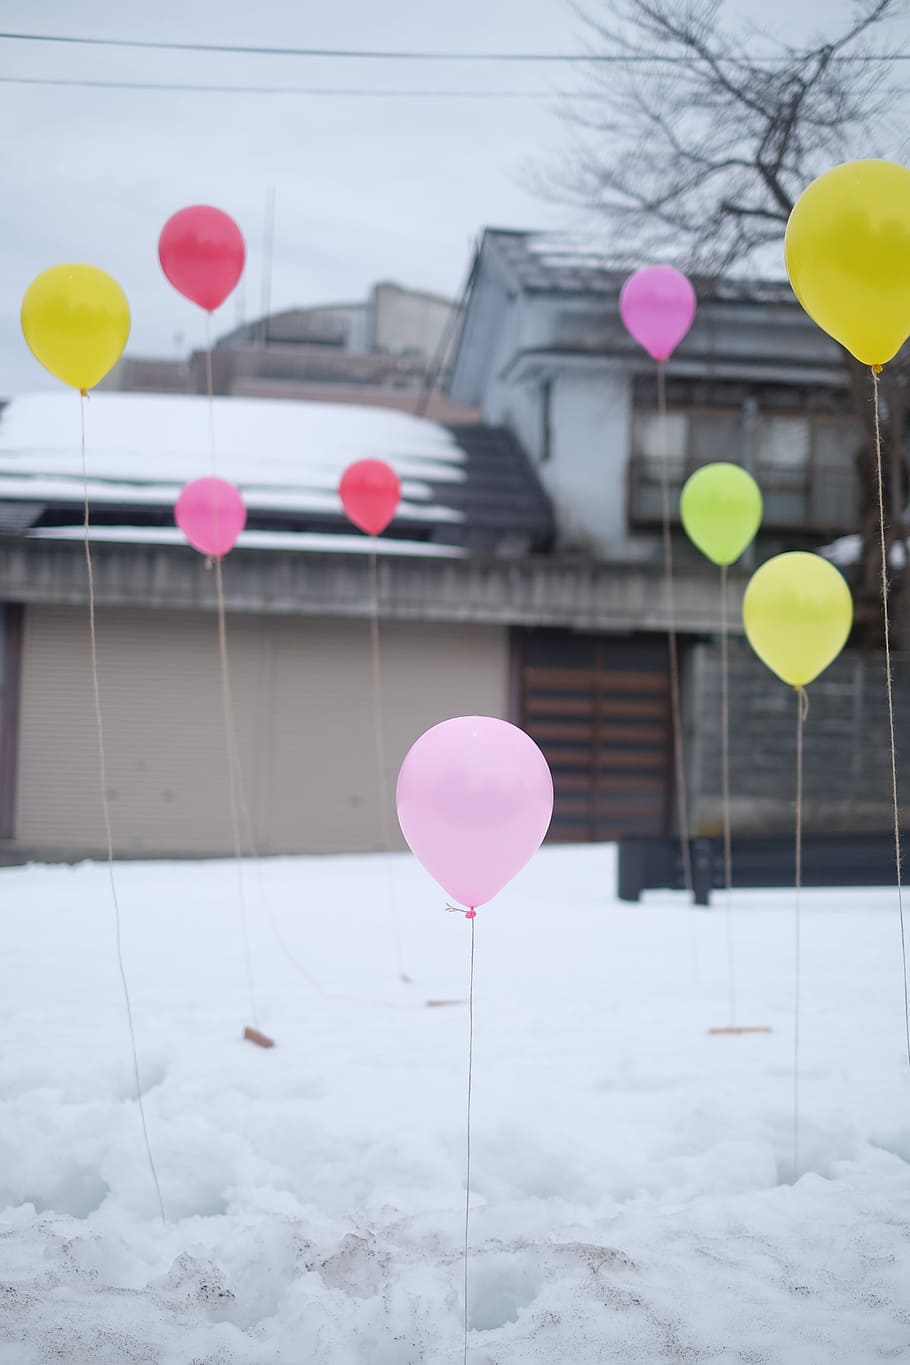 globos, fiesta, nieve, entrada de auto, casa, invierno, frío, hogar, cumpleaños, globo